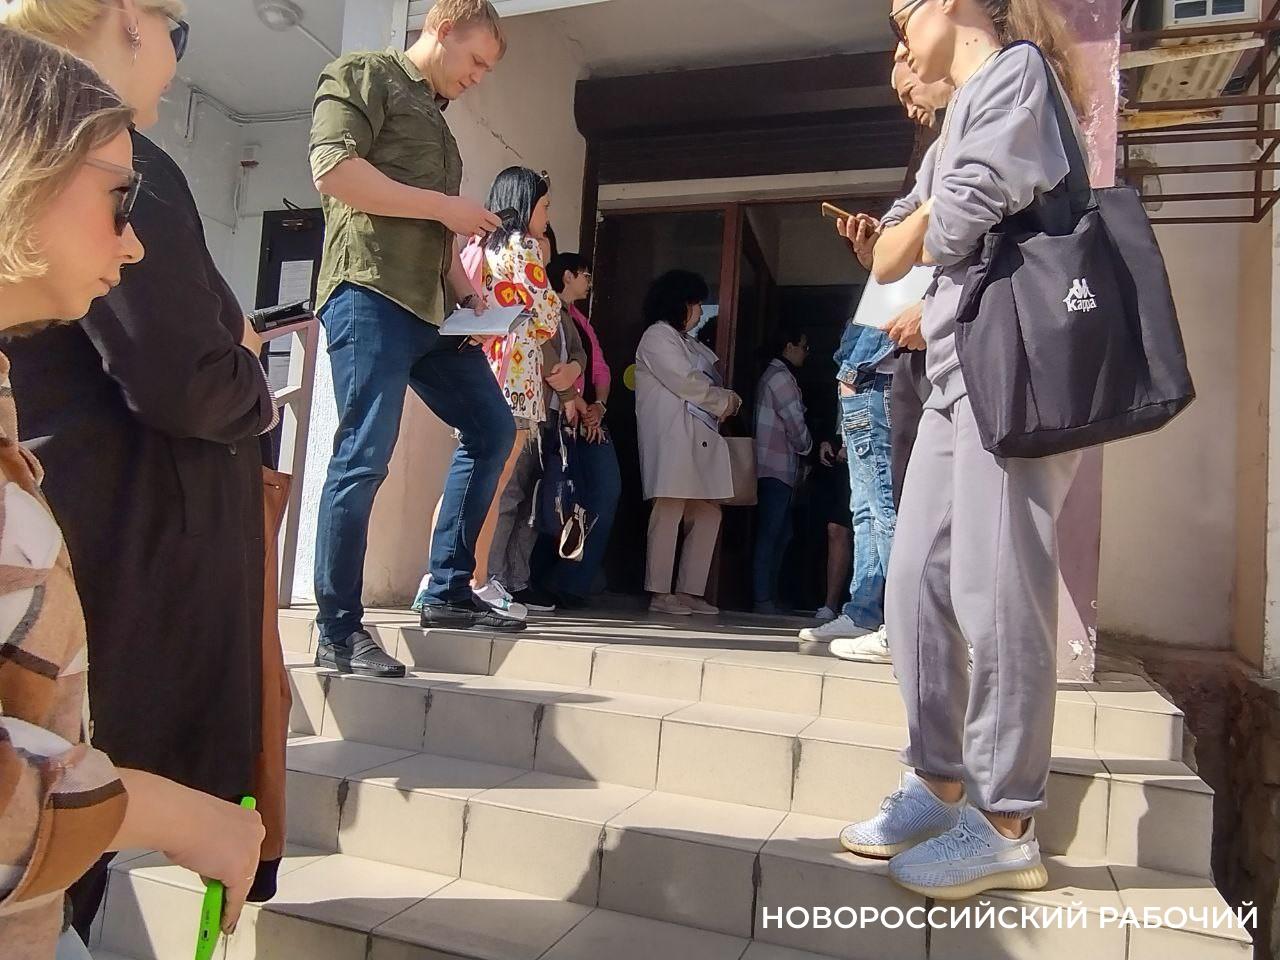 «Вы опоздали! Записываются с 4 утра!» В Новороссийске родители часами стоят в очереди за штампом о гражданстве